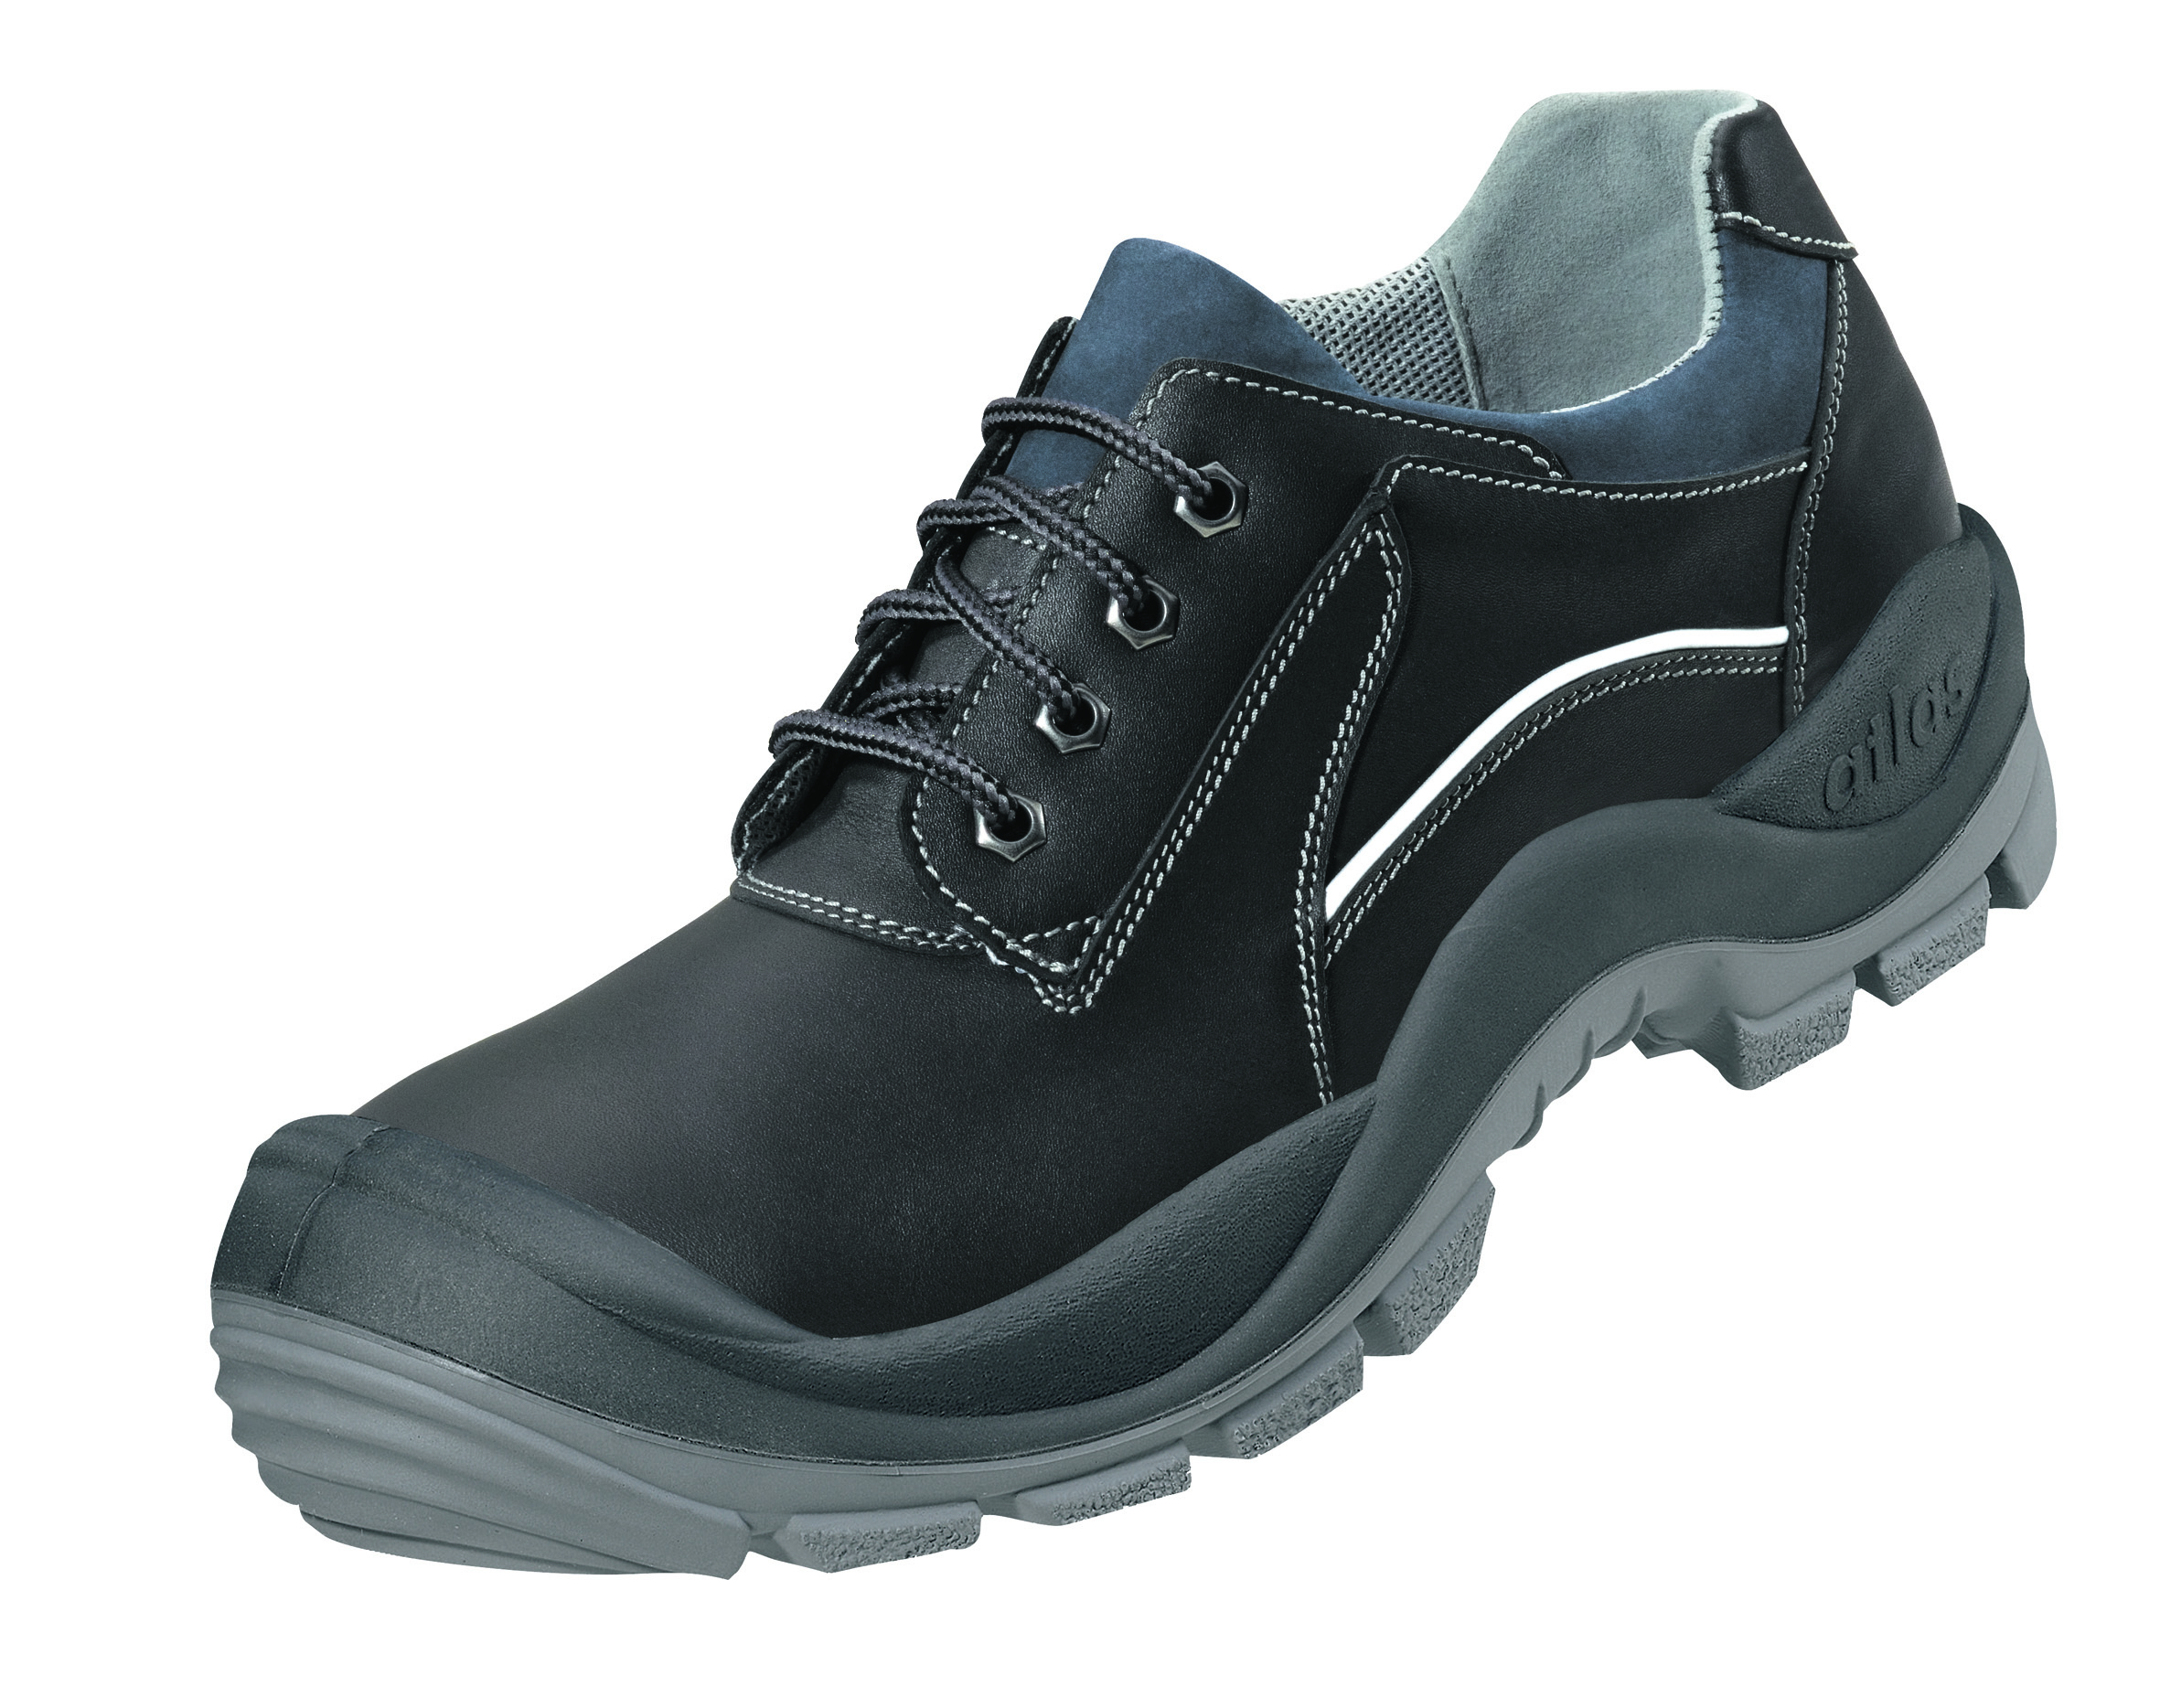 ATLAS-Footwear, S3-Arbeits-Berufs-Sicherheits-Schuhe, Anatomic Bau 460, schwarz, Größe: 39